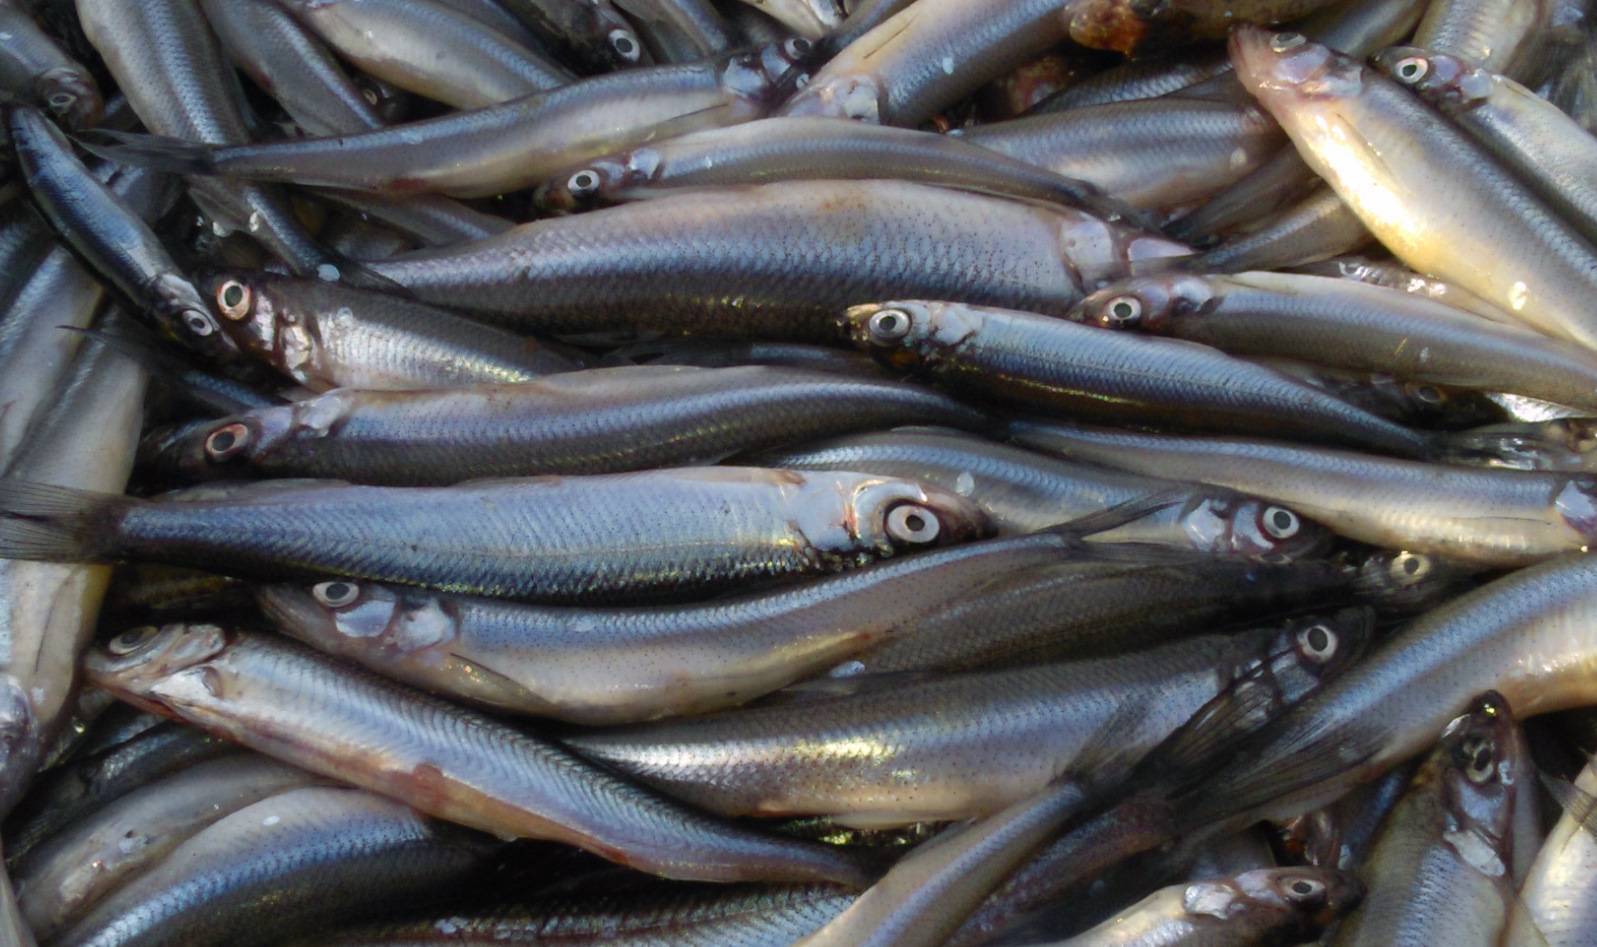 Рыба уёк (мойва): описание, места обитания, хозяйственное значение